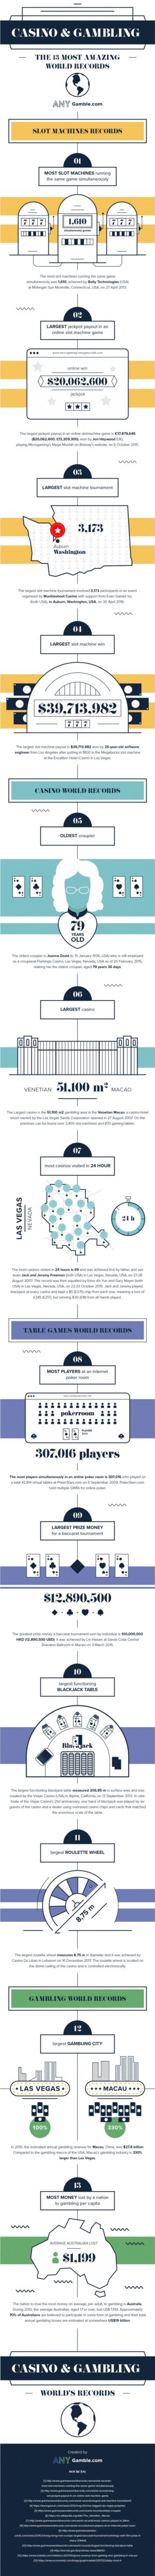 13 světových rekordů gamblingu.